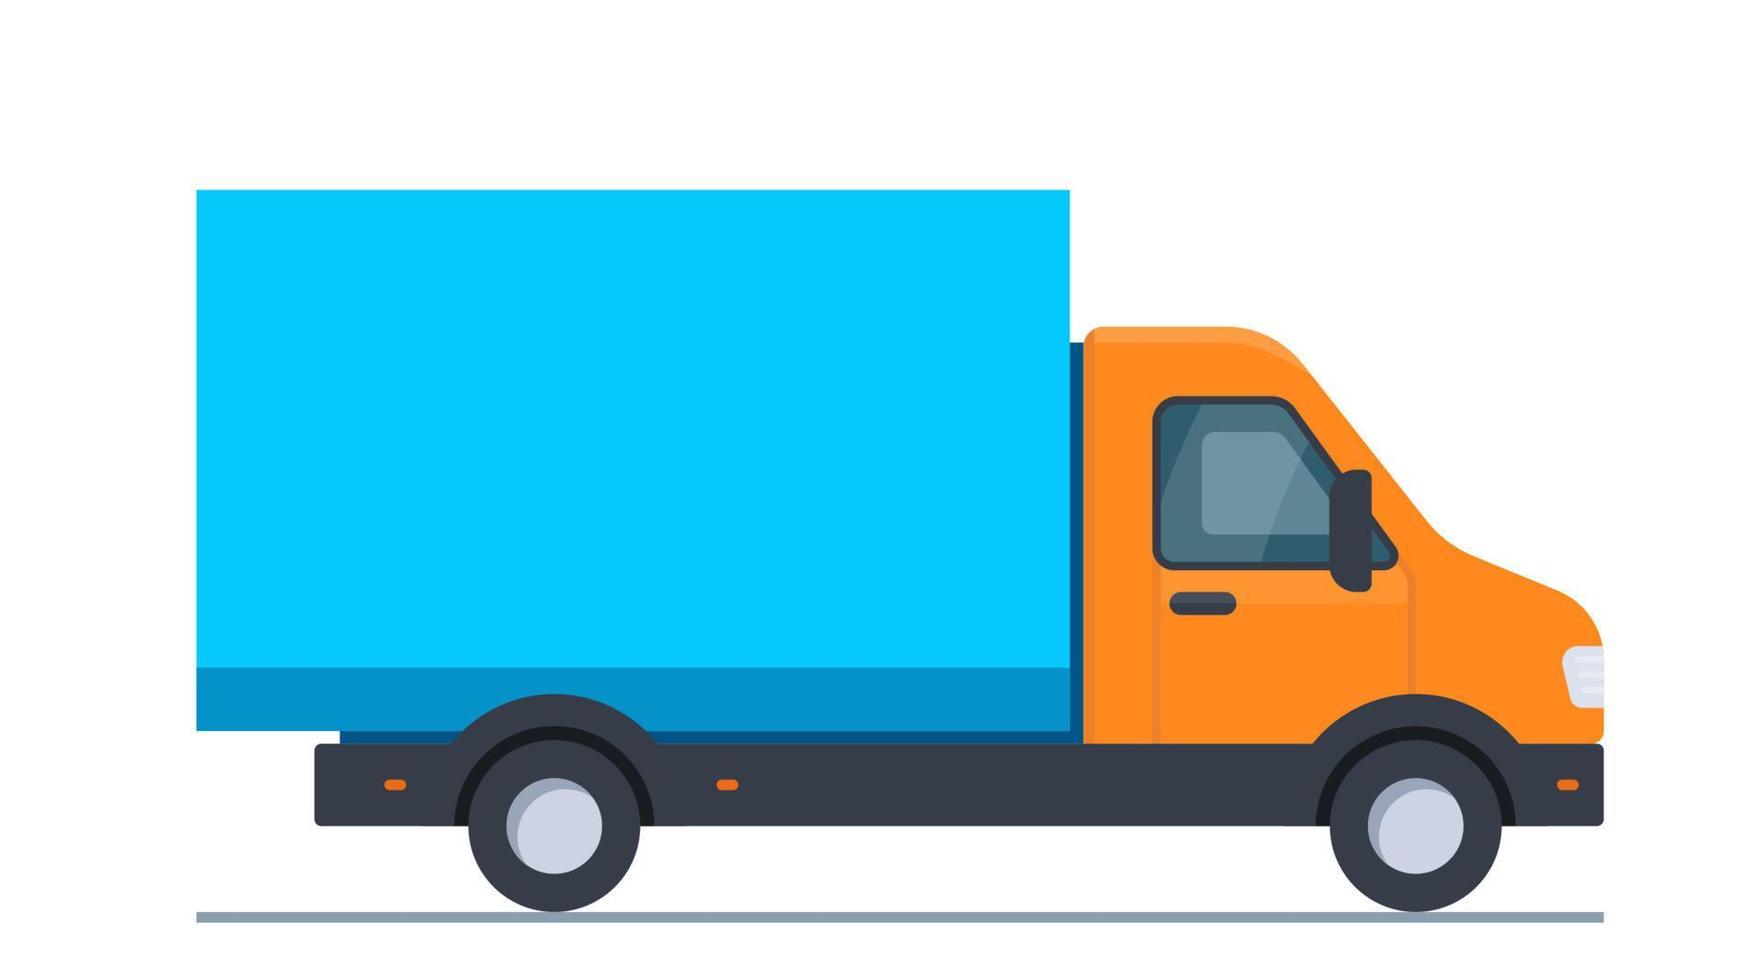 caminhão para transporte de mercadorias e materiais de construção, grande volume e peso, entrega ao encomendar mercadorias. Caminhão de carga. ilustração vetorial isolada no fundo branco. vetor